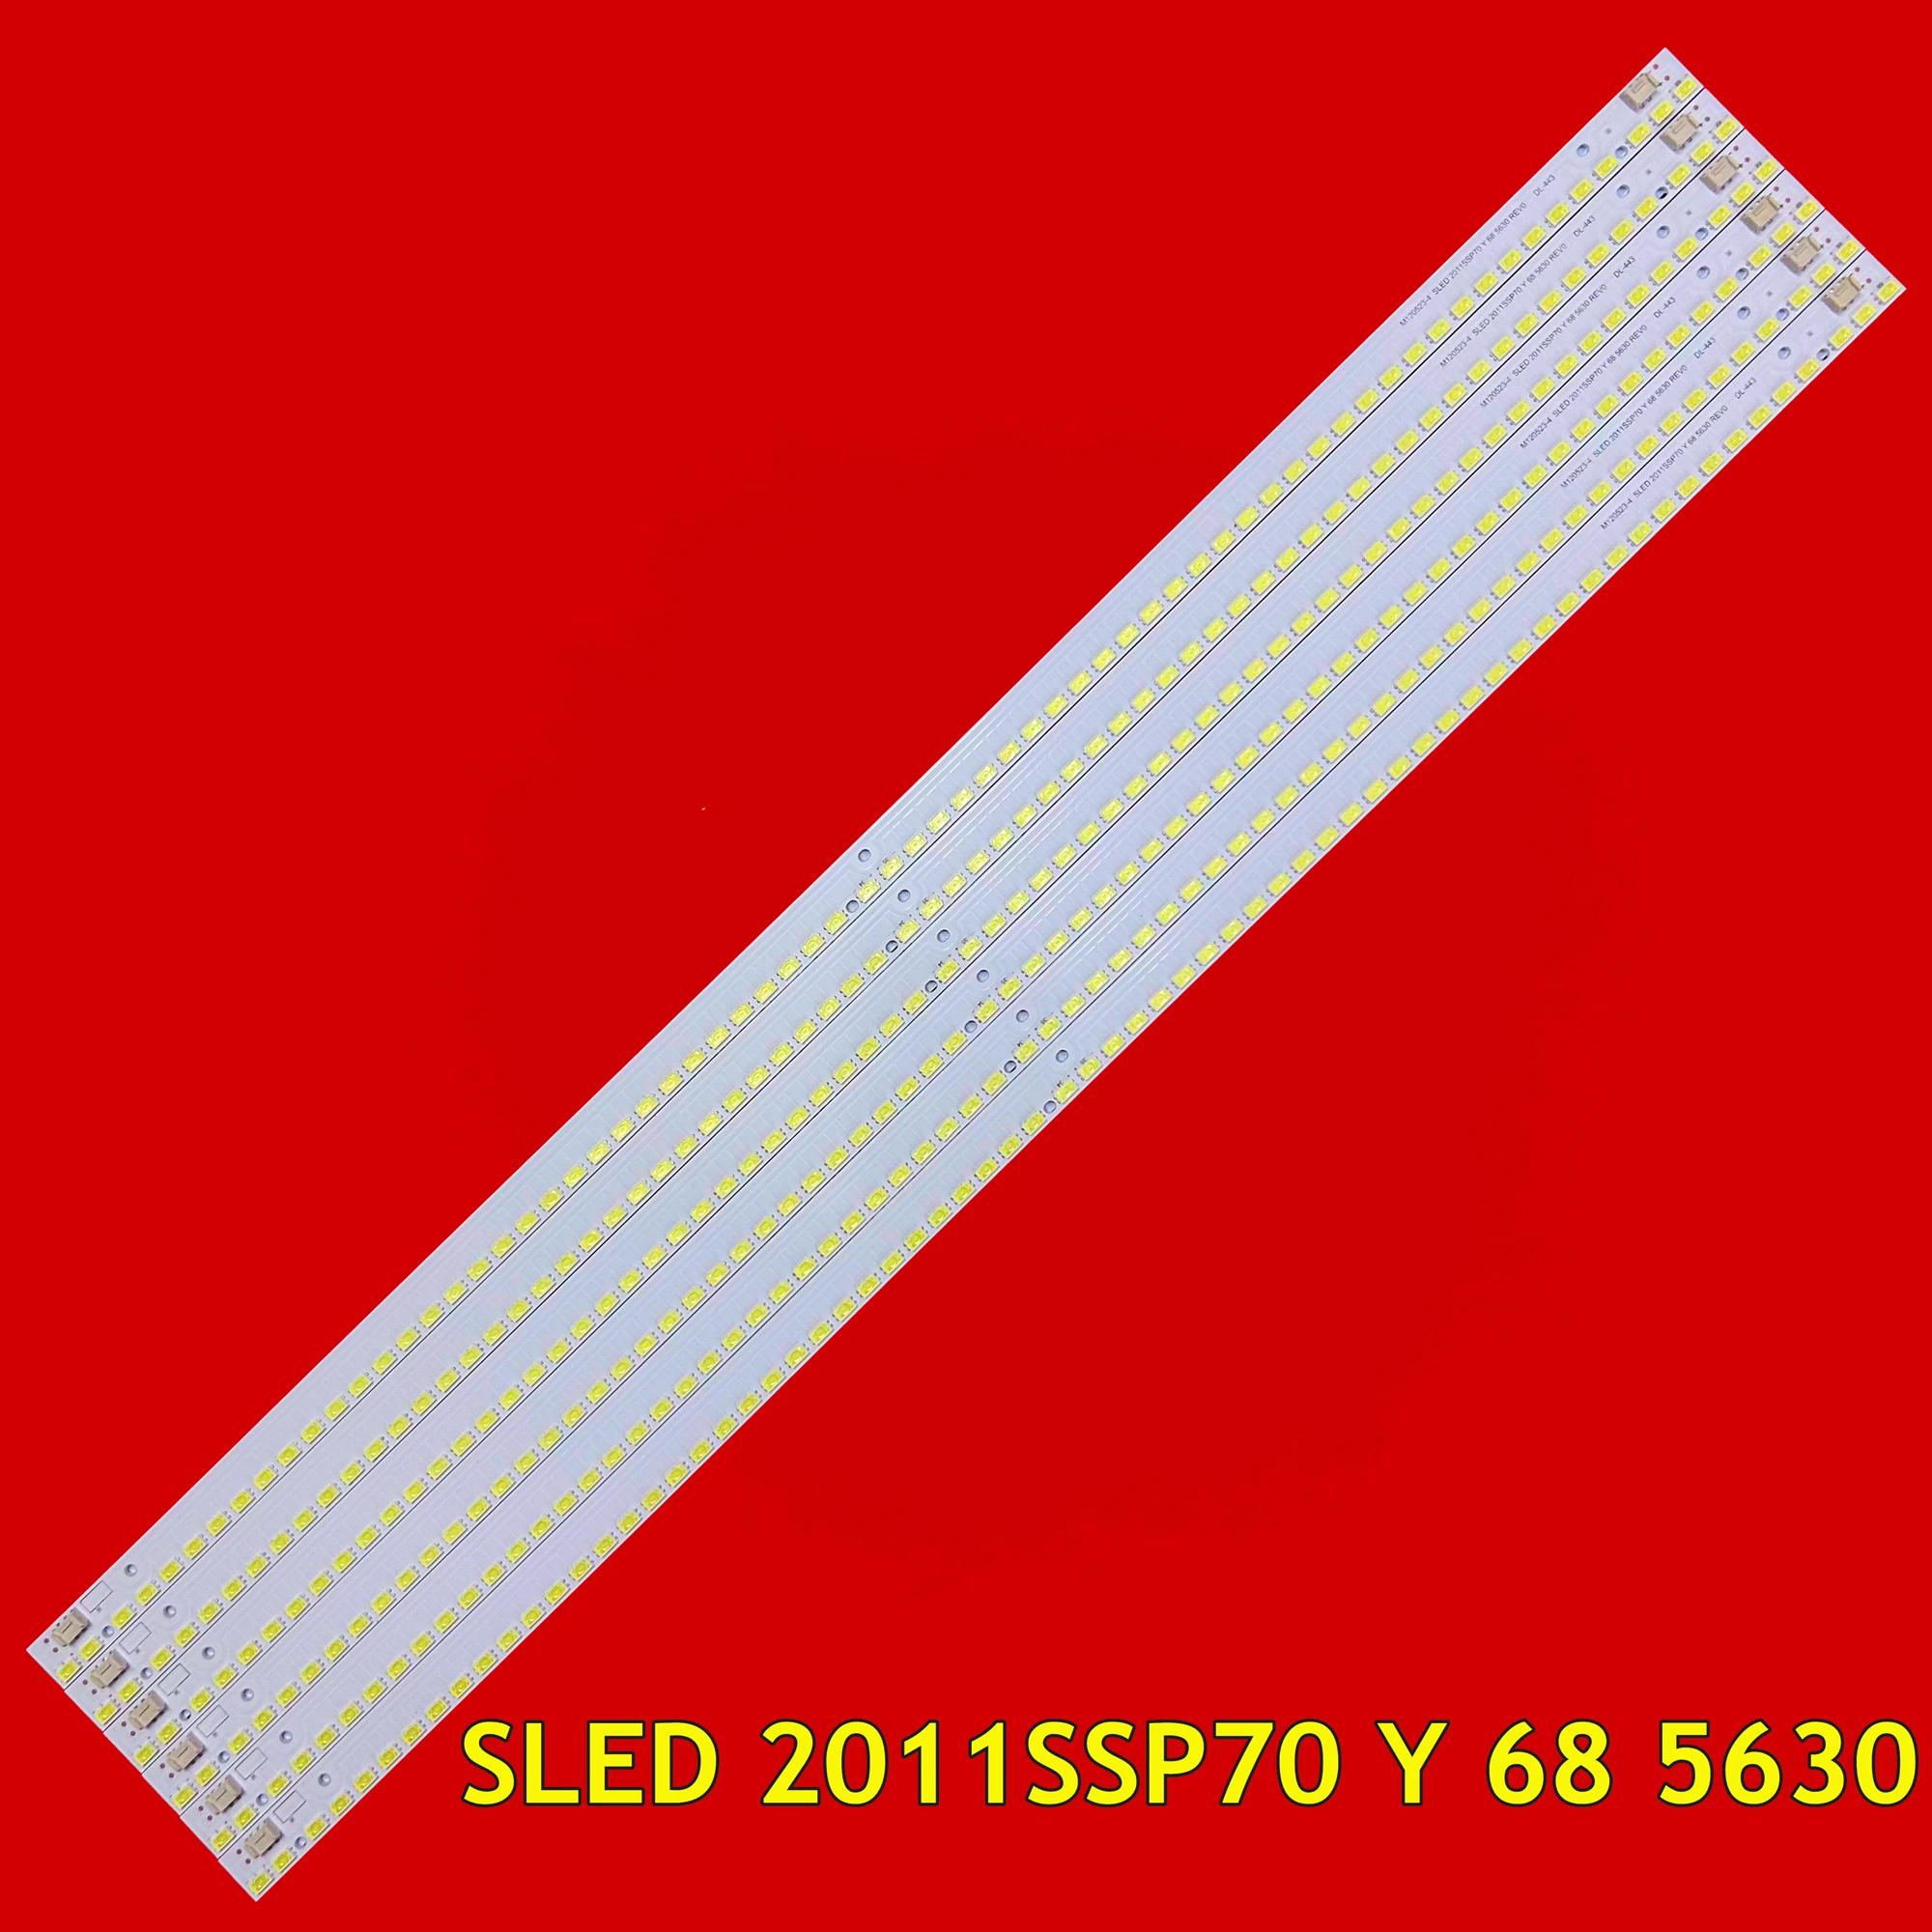 LCD-70LX840A LC-70LE745U LED TV Ʈ Ʈ, LC-70C8470U SLED 2011SSP70 Y 68 5630